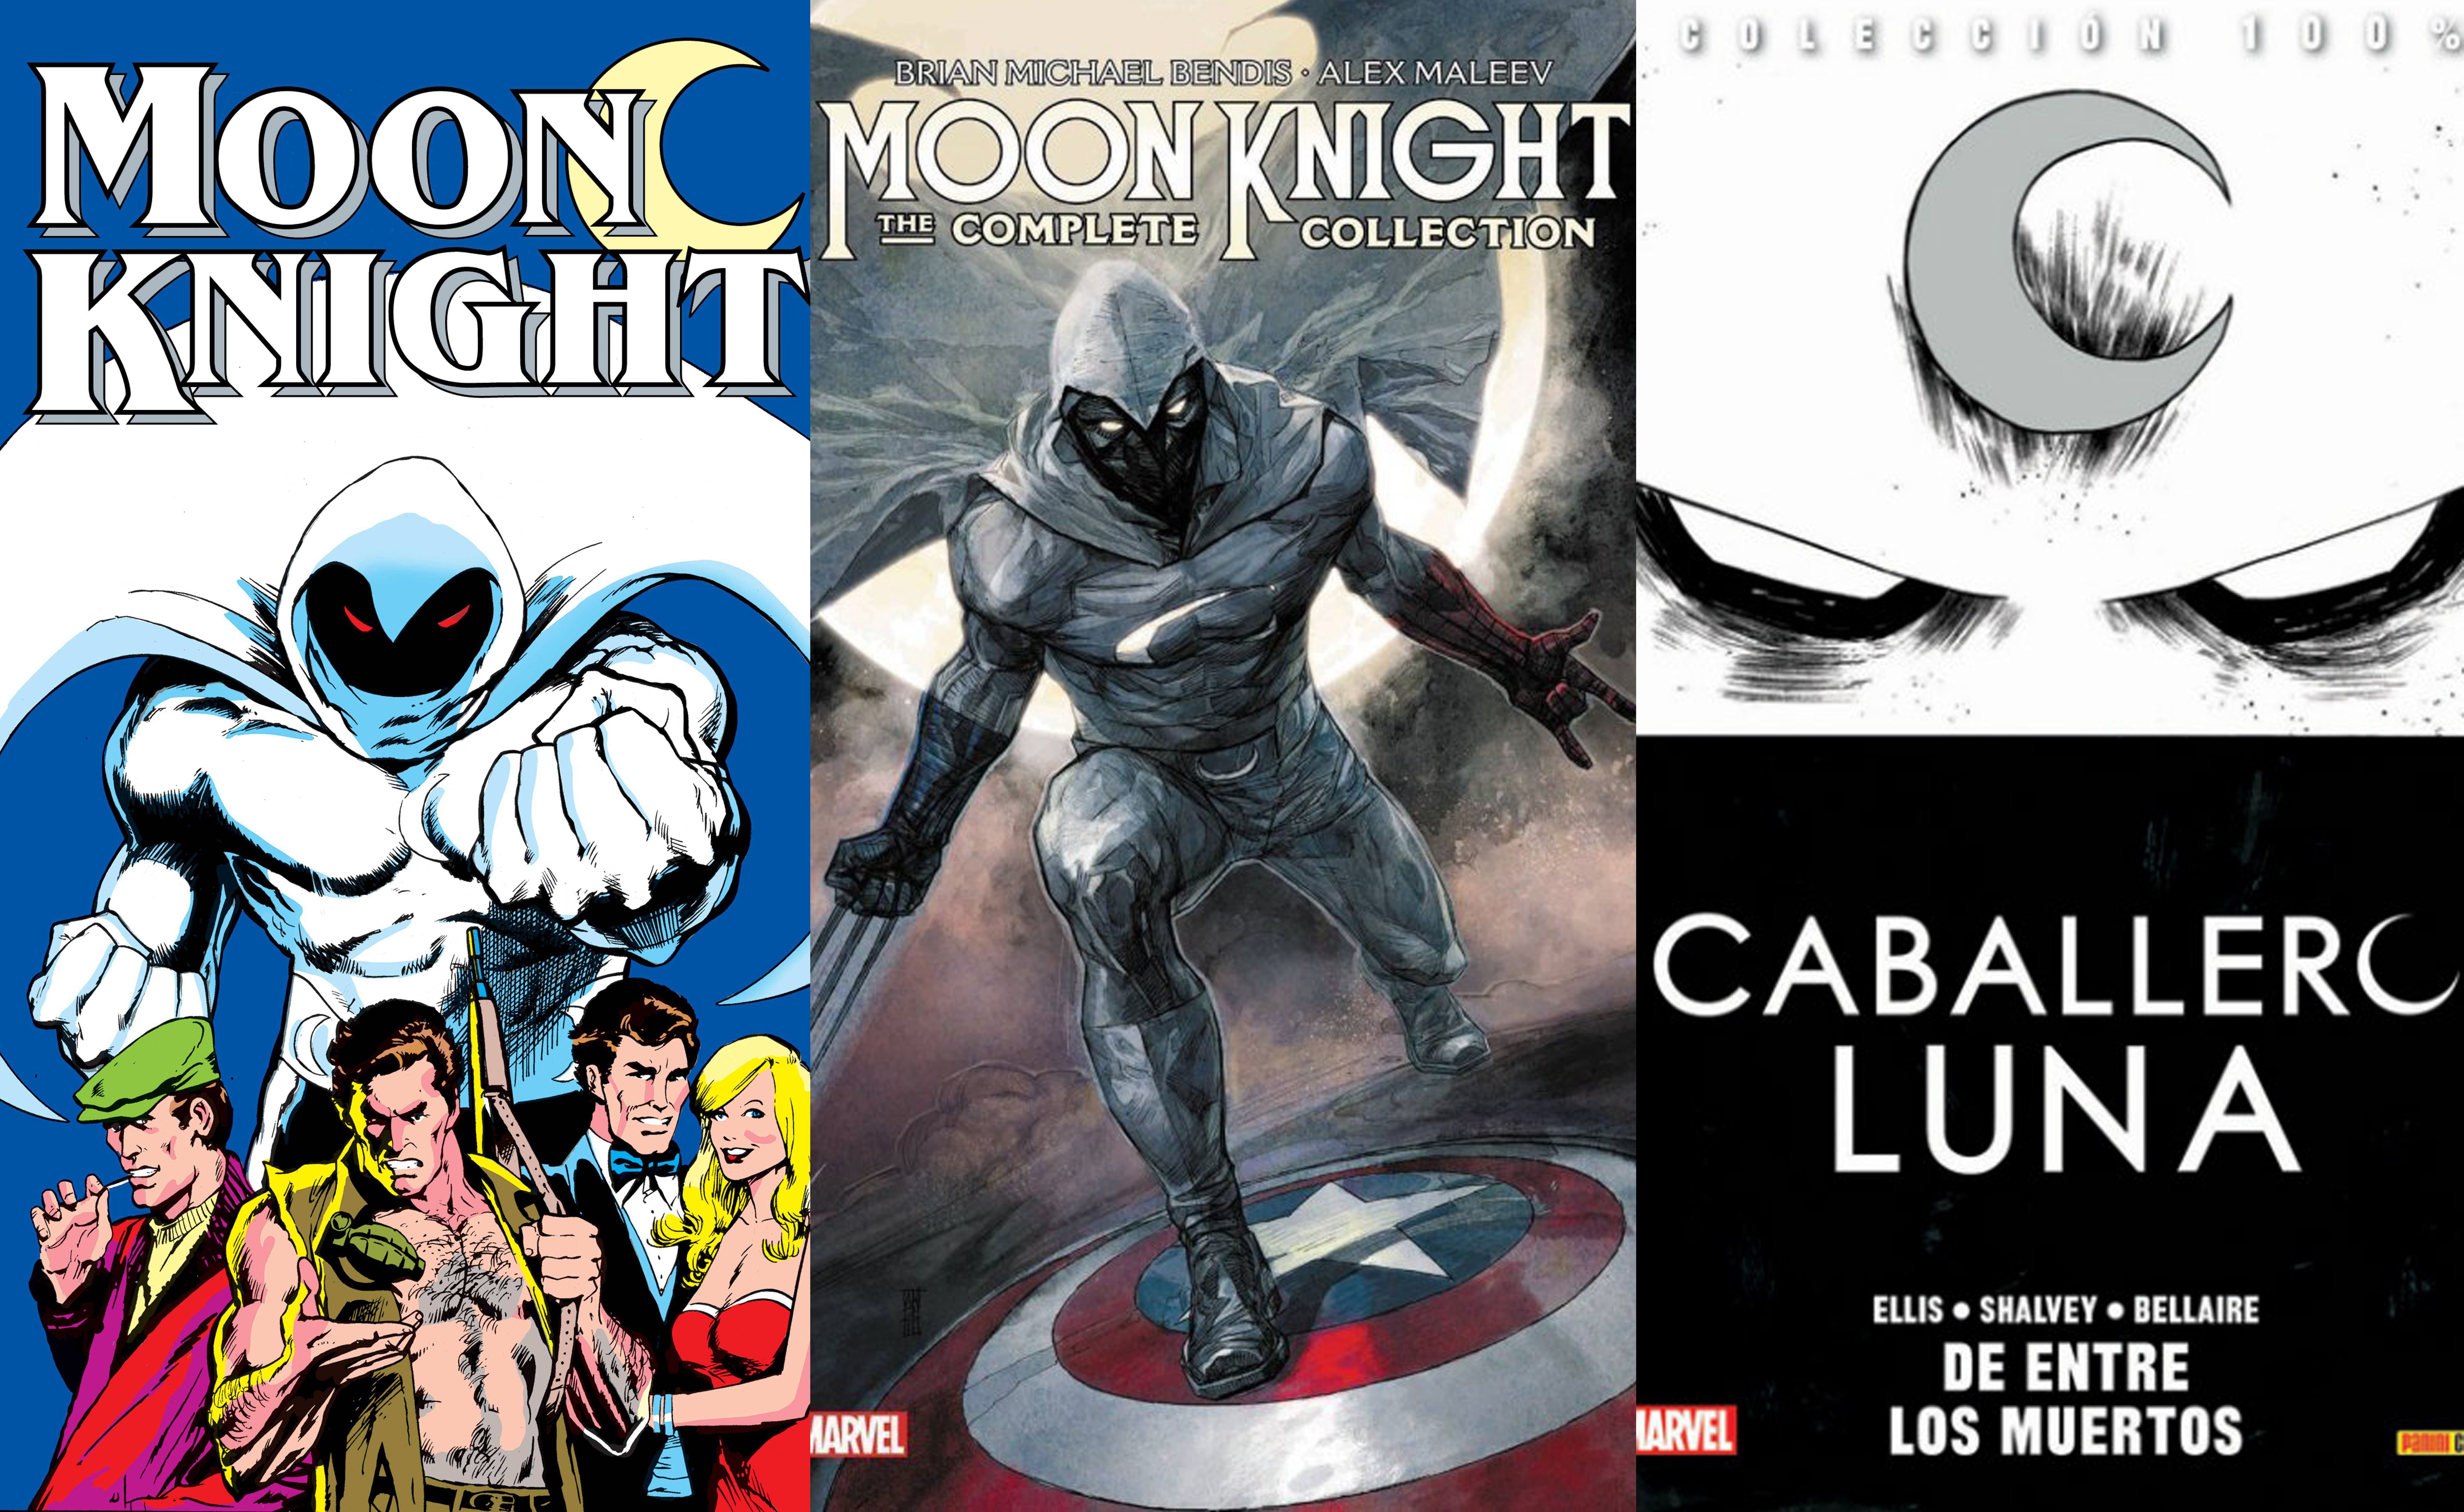 Conoce al elenco de “Moon Knight”, la nueva serie de Marvel